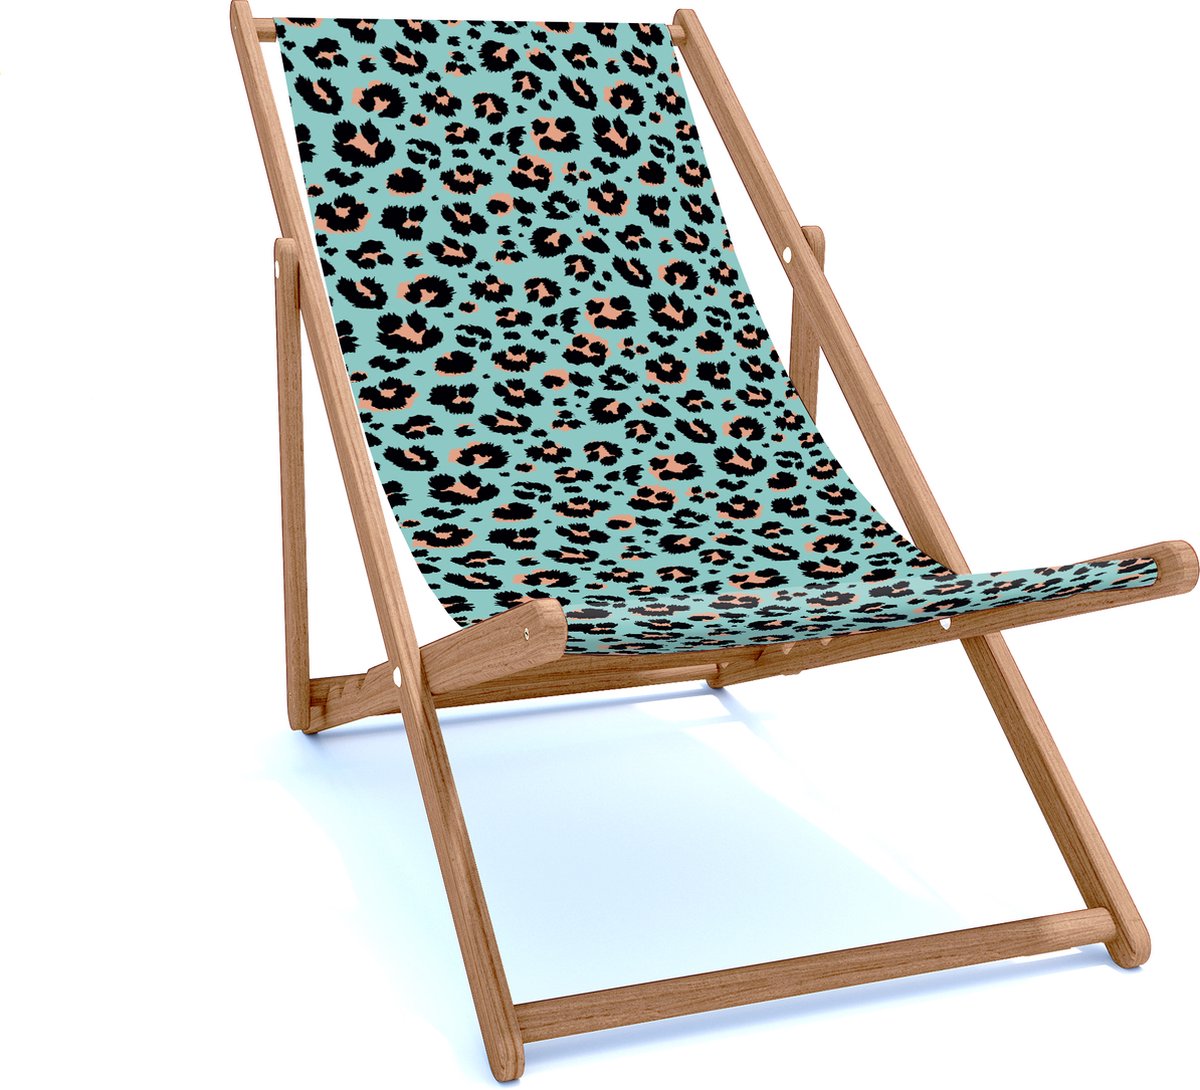 Holtaz Strandstoel Hout Inklapbaar Comfortabele Zonnebed Ligbed met verstelbare Lighoogte houten frame met stoffen Patterns